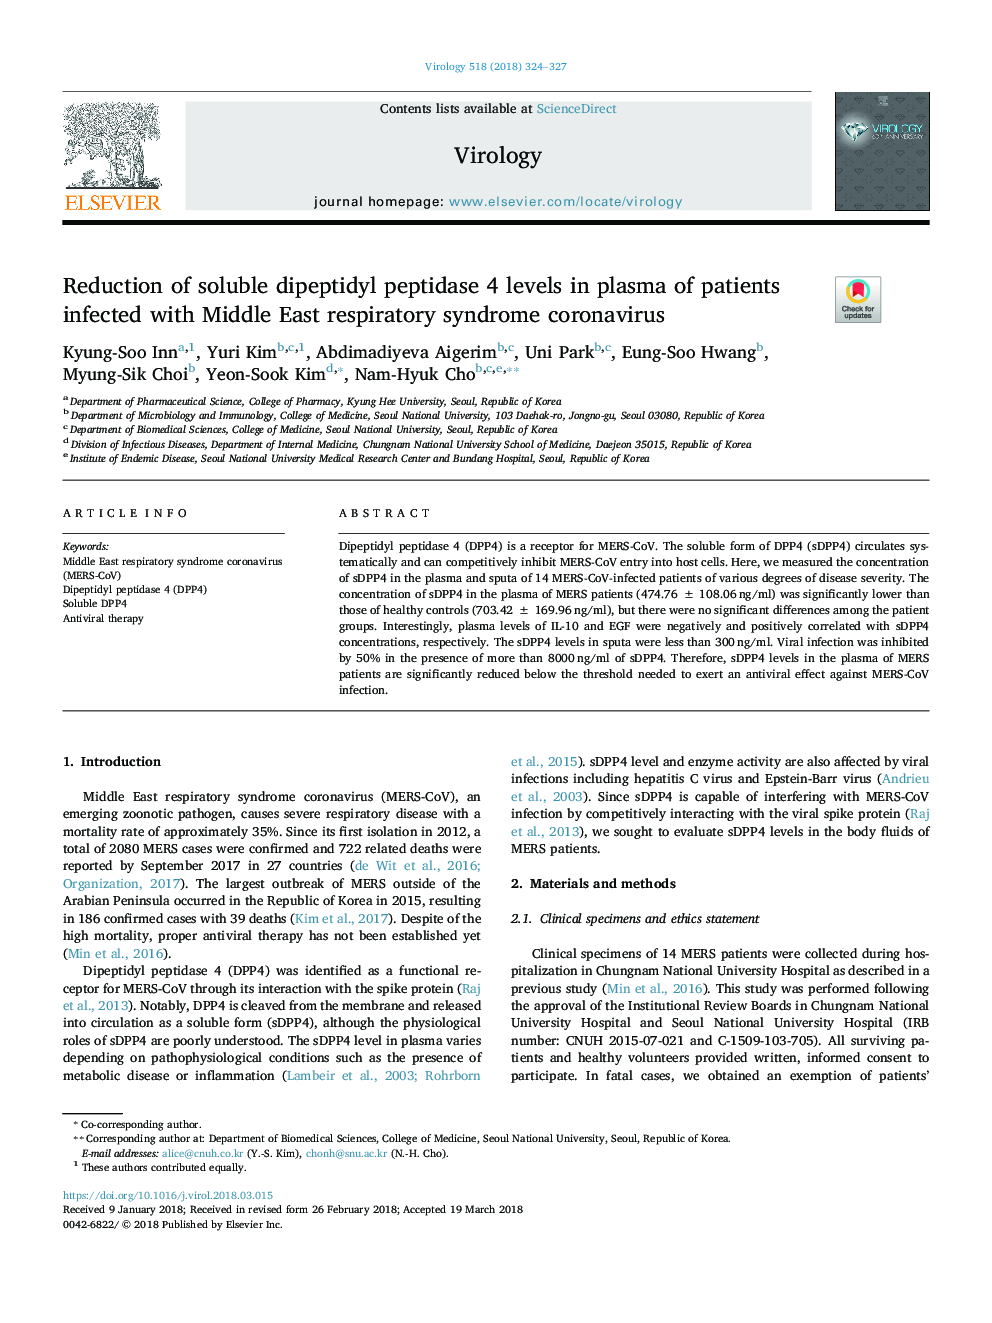 کاهش سطح دیپپتیدیل پپتیداز محلول در پلاسمای بیماران مبتلا به کروناویروس سندرم تنفسی خاورمیانه 